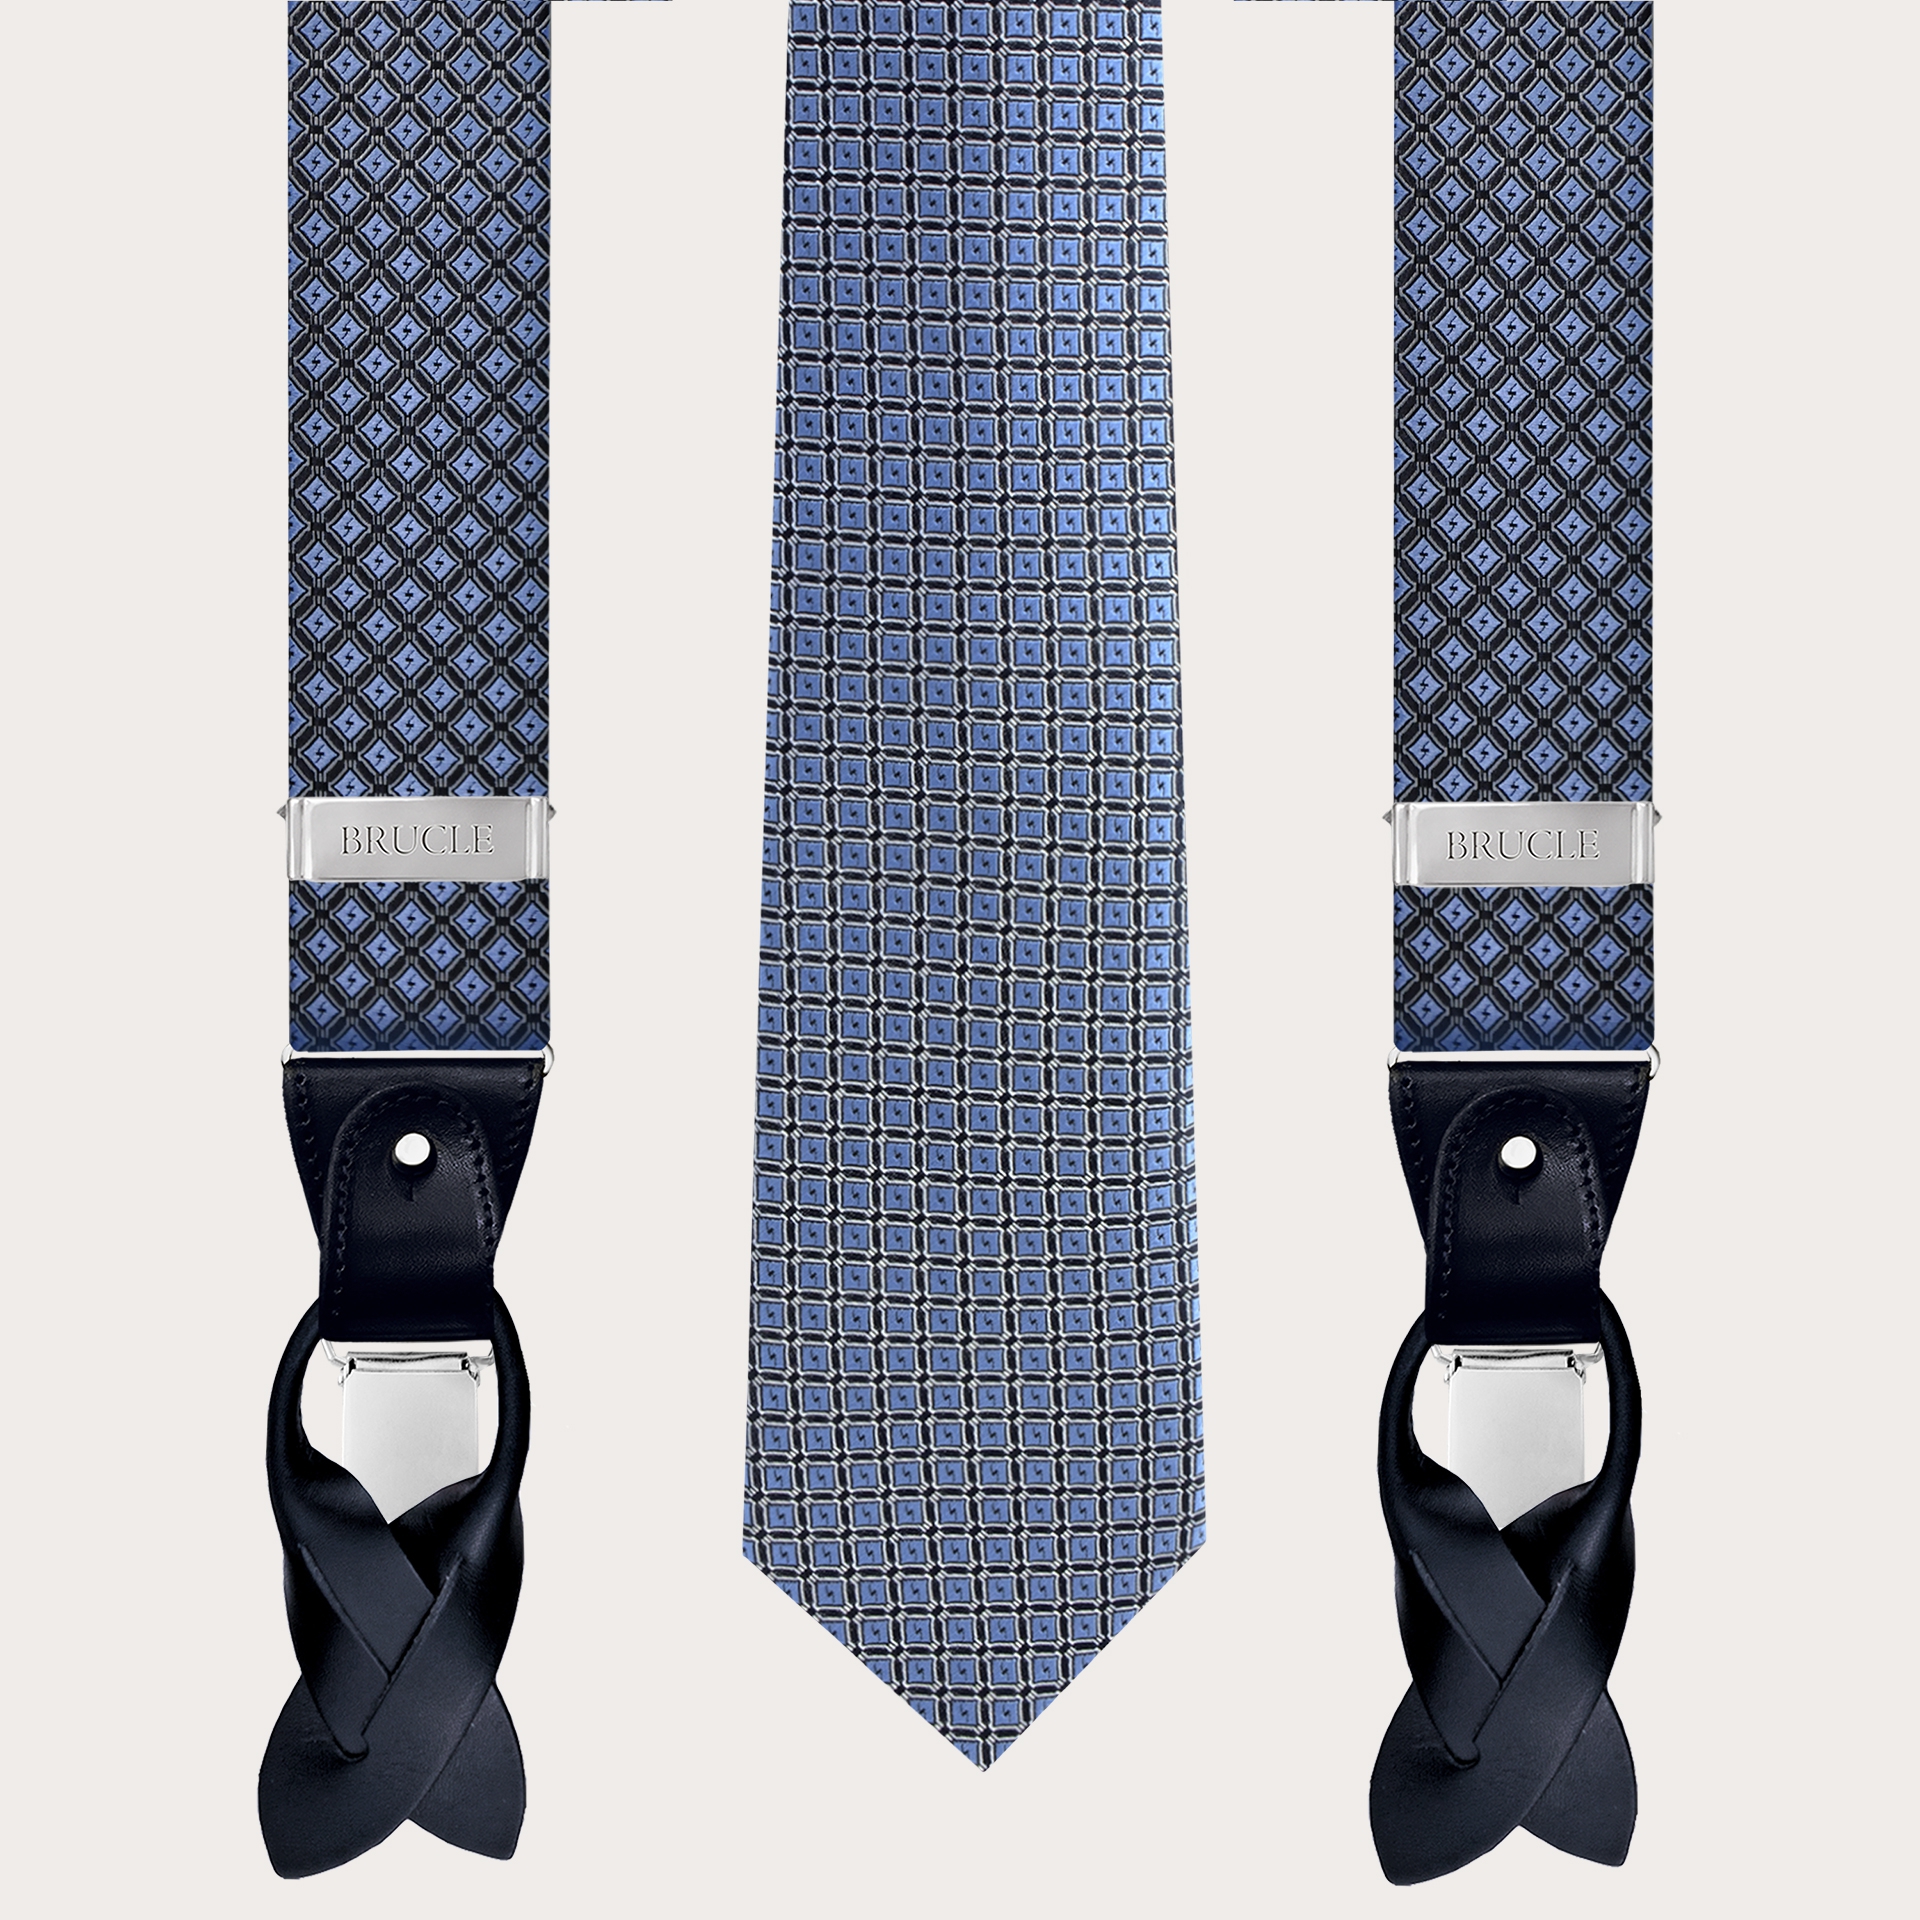 Abgestimmte Hosenträger und Krawatte aus Seide, blaues Rautenmuster